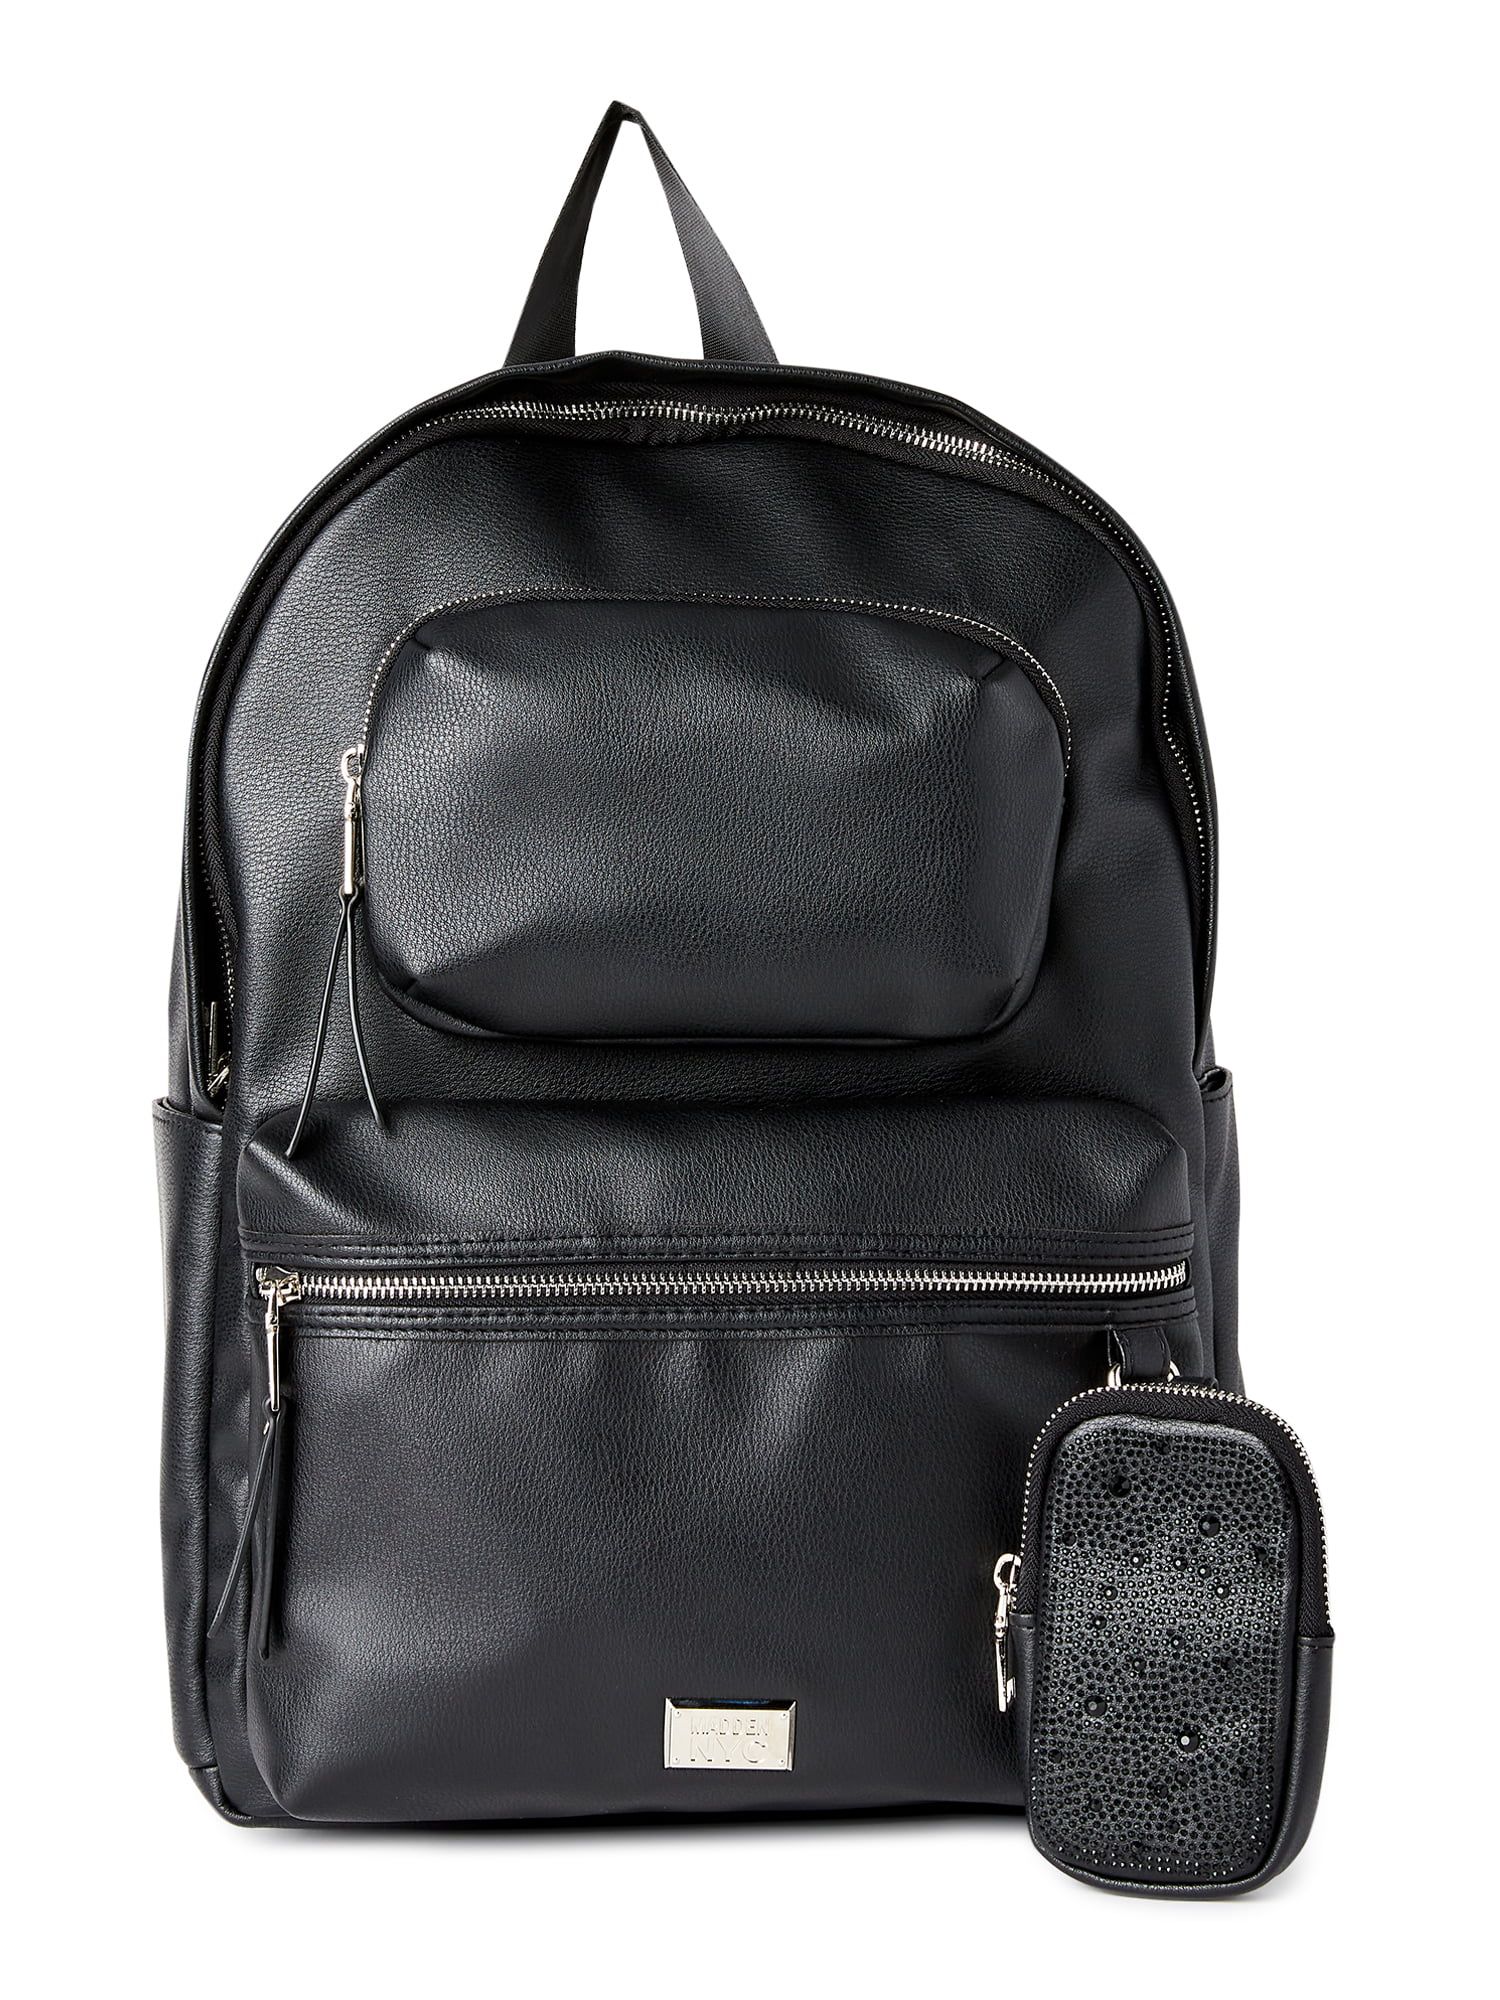 Madden NYC Women’s Modular Zipper Backpack Black | Walmart (US)